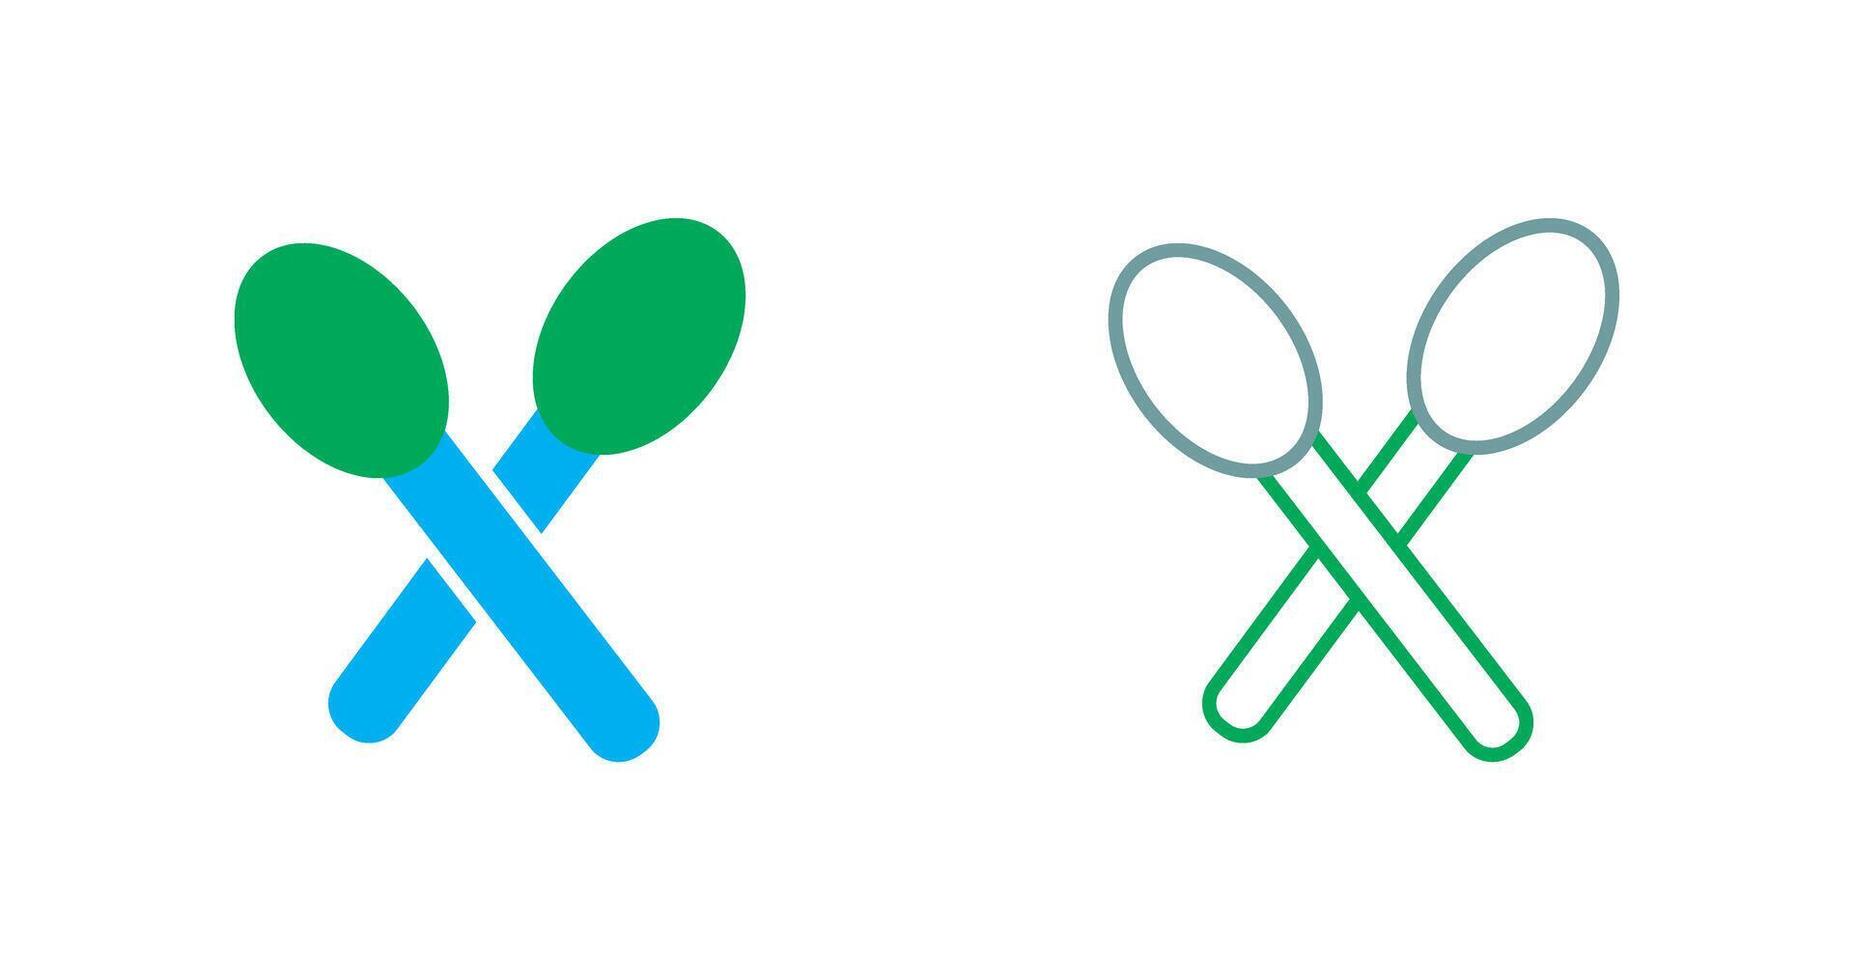 Spoons Icon Design vector